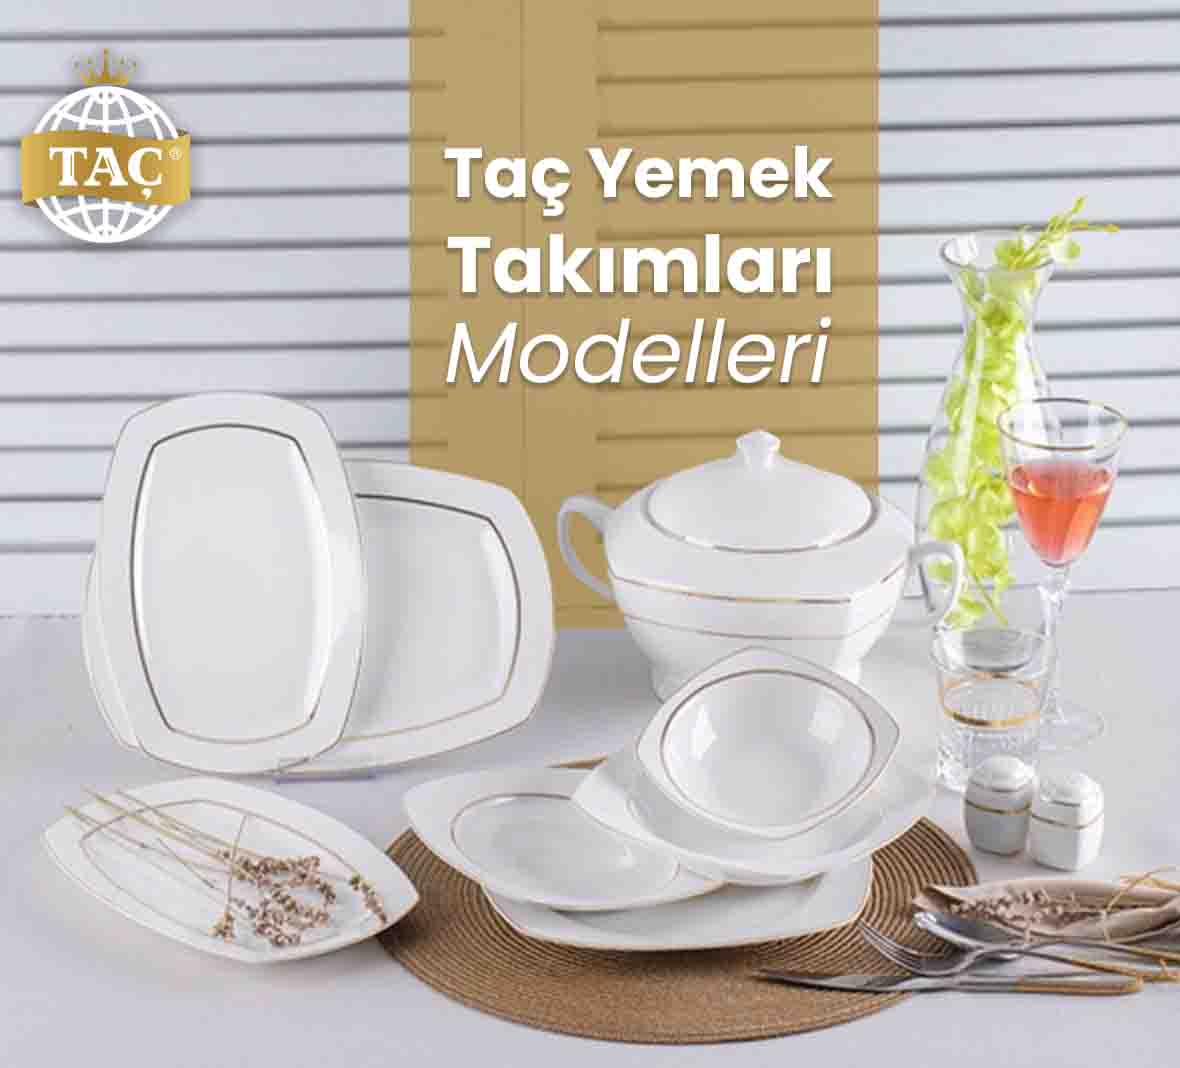 Taç Yemek Takımları Modelleri - Tacev.com